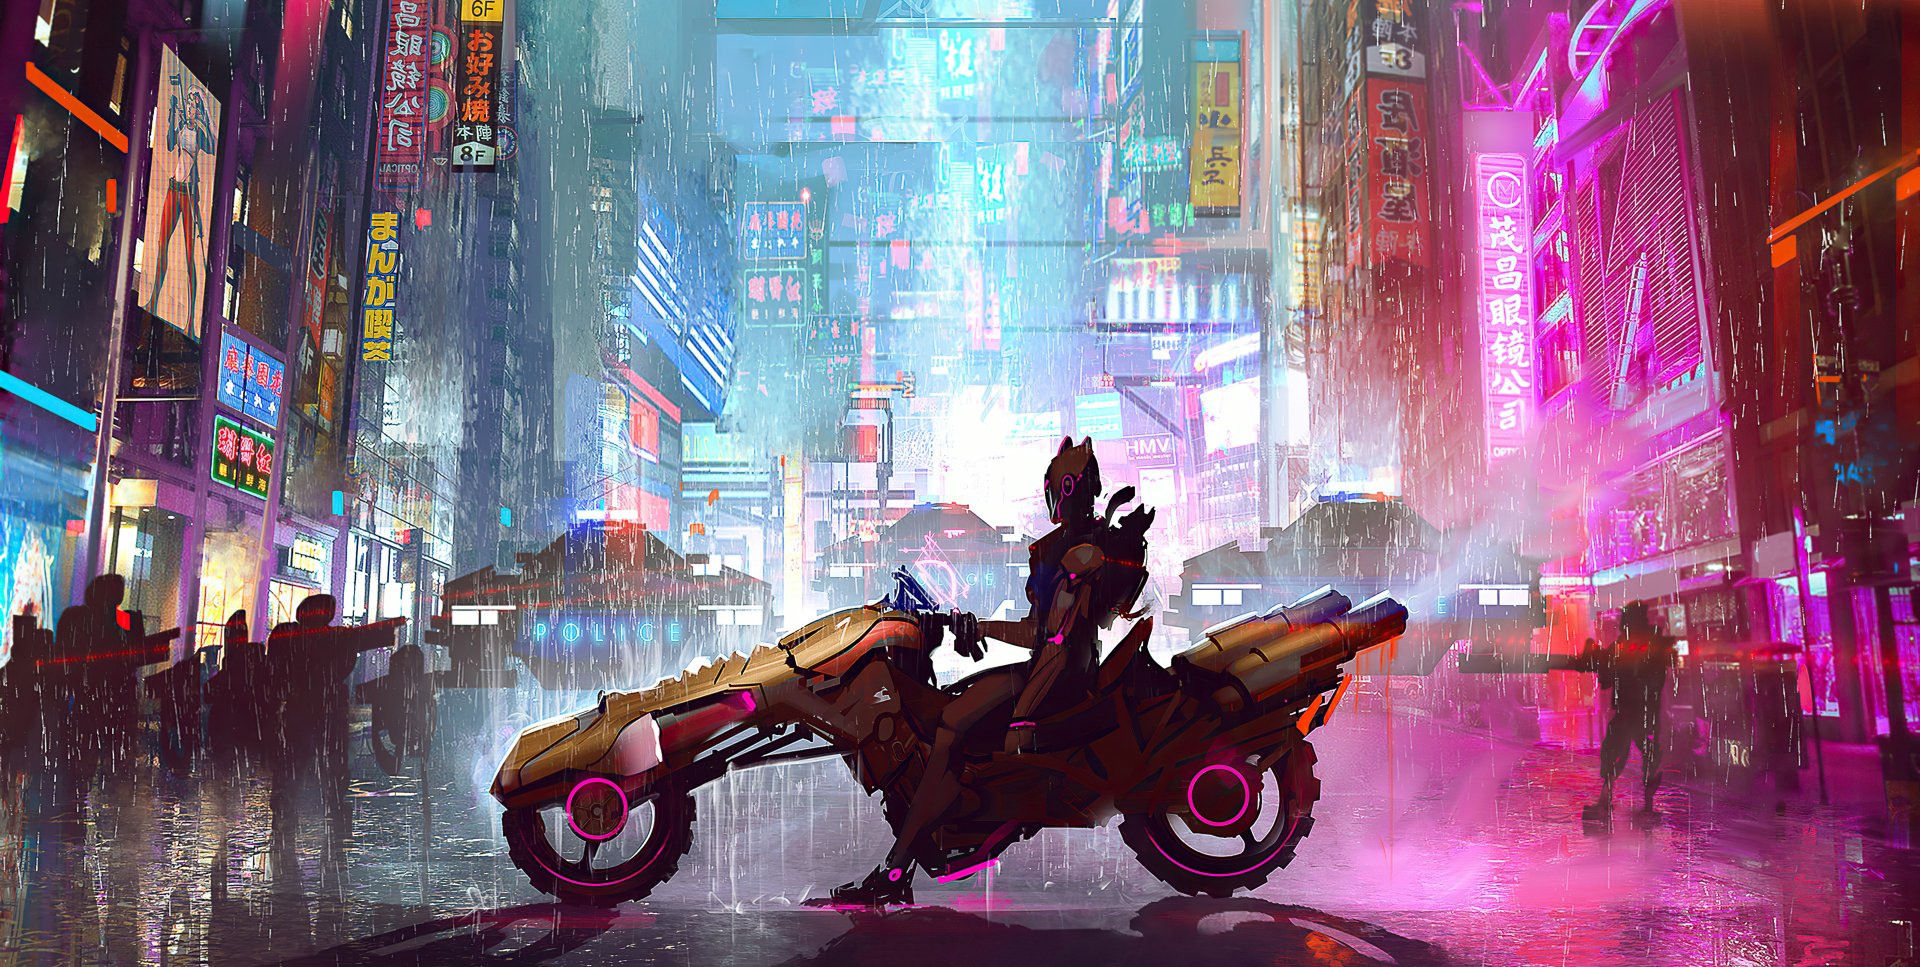 Cyberpunk 2077 (2020) Wallpaper HD 4k by SahibDM on DeviantArt